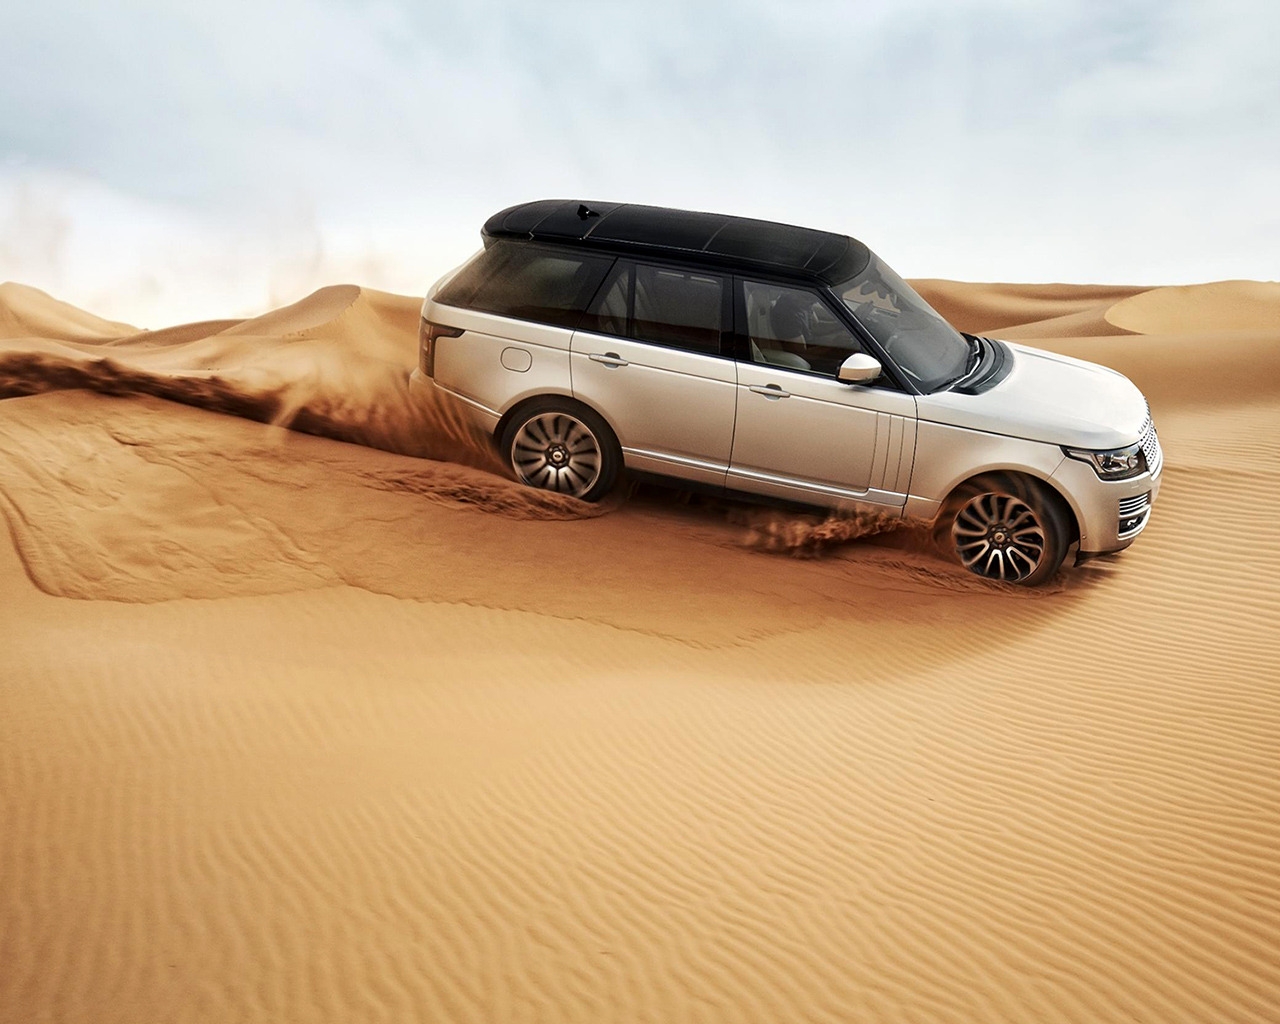 Range Rover in the Desert for 1280 x 1024 resolution